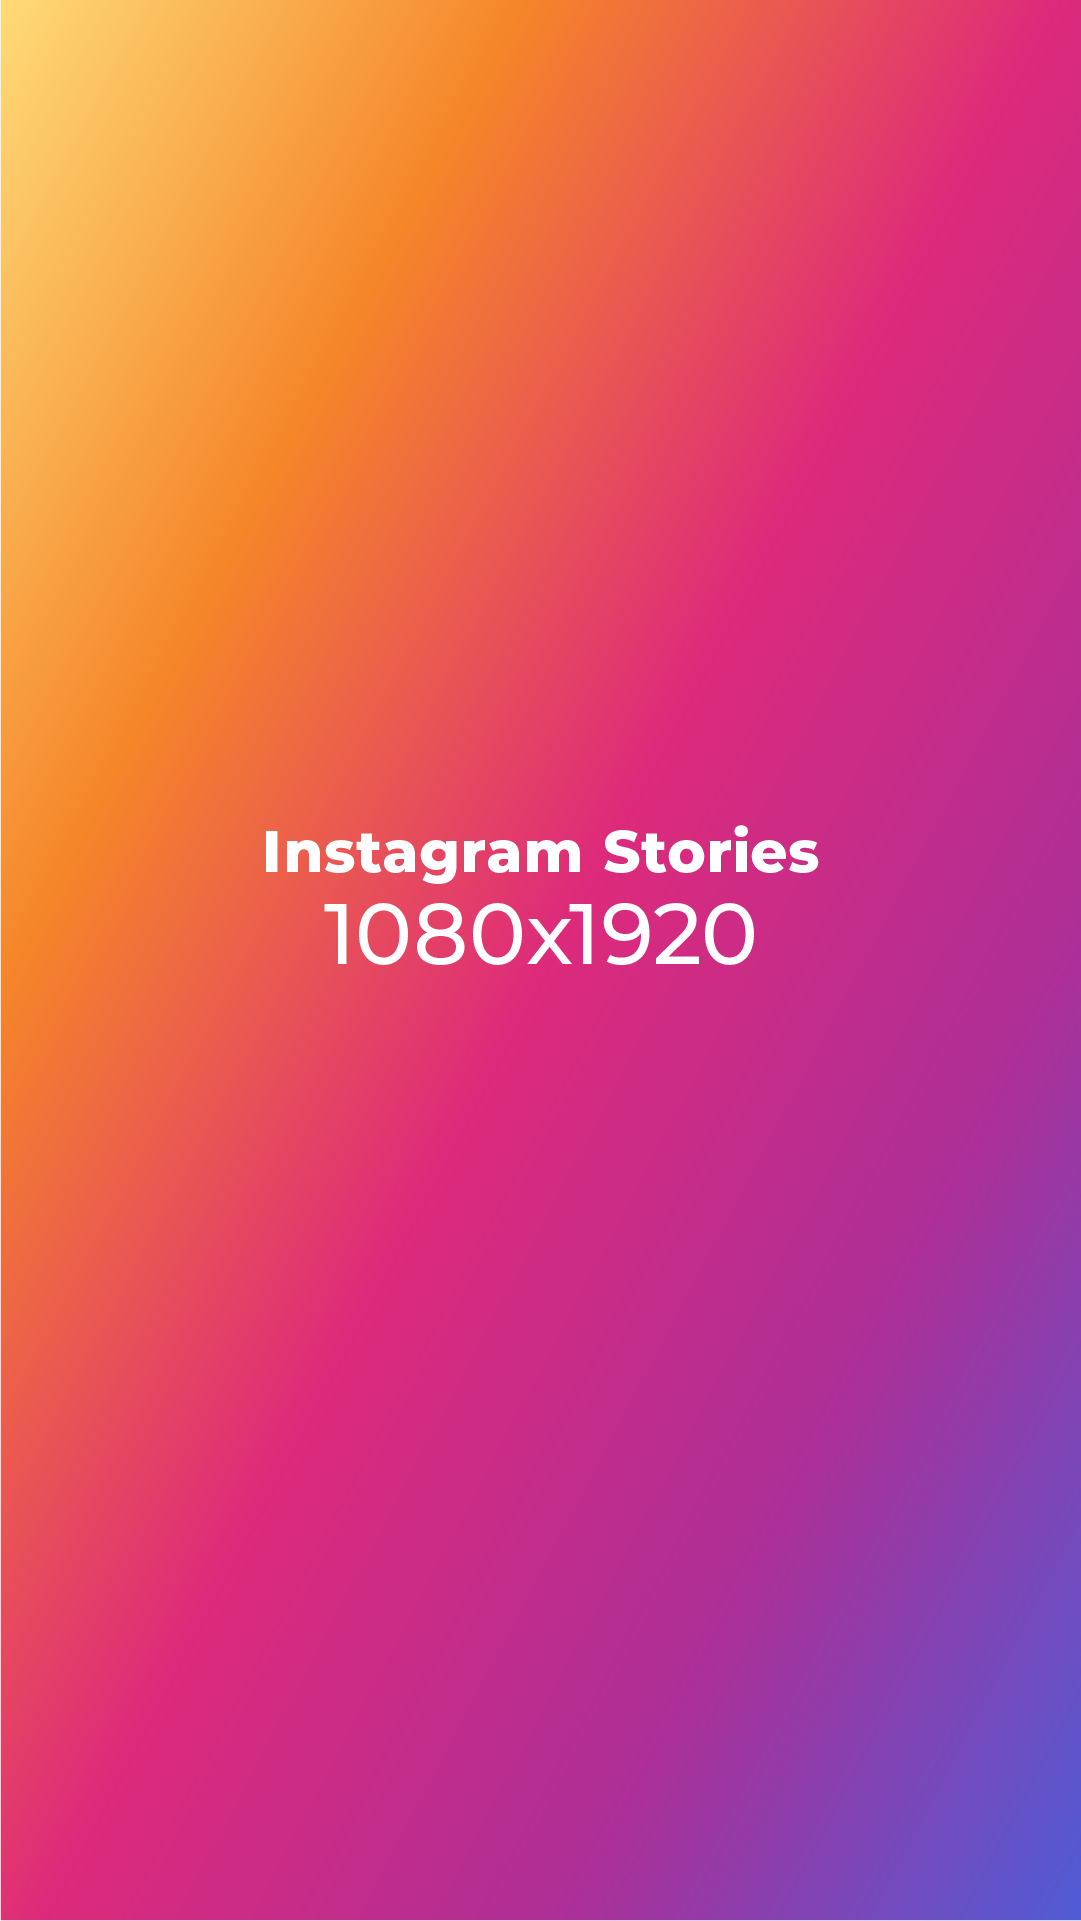 instagram story photo size